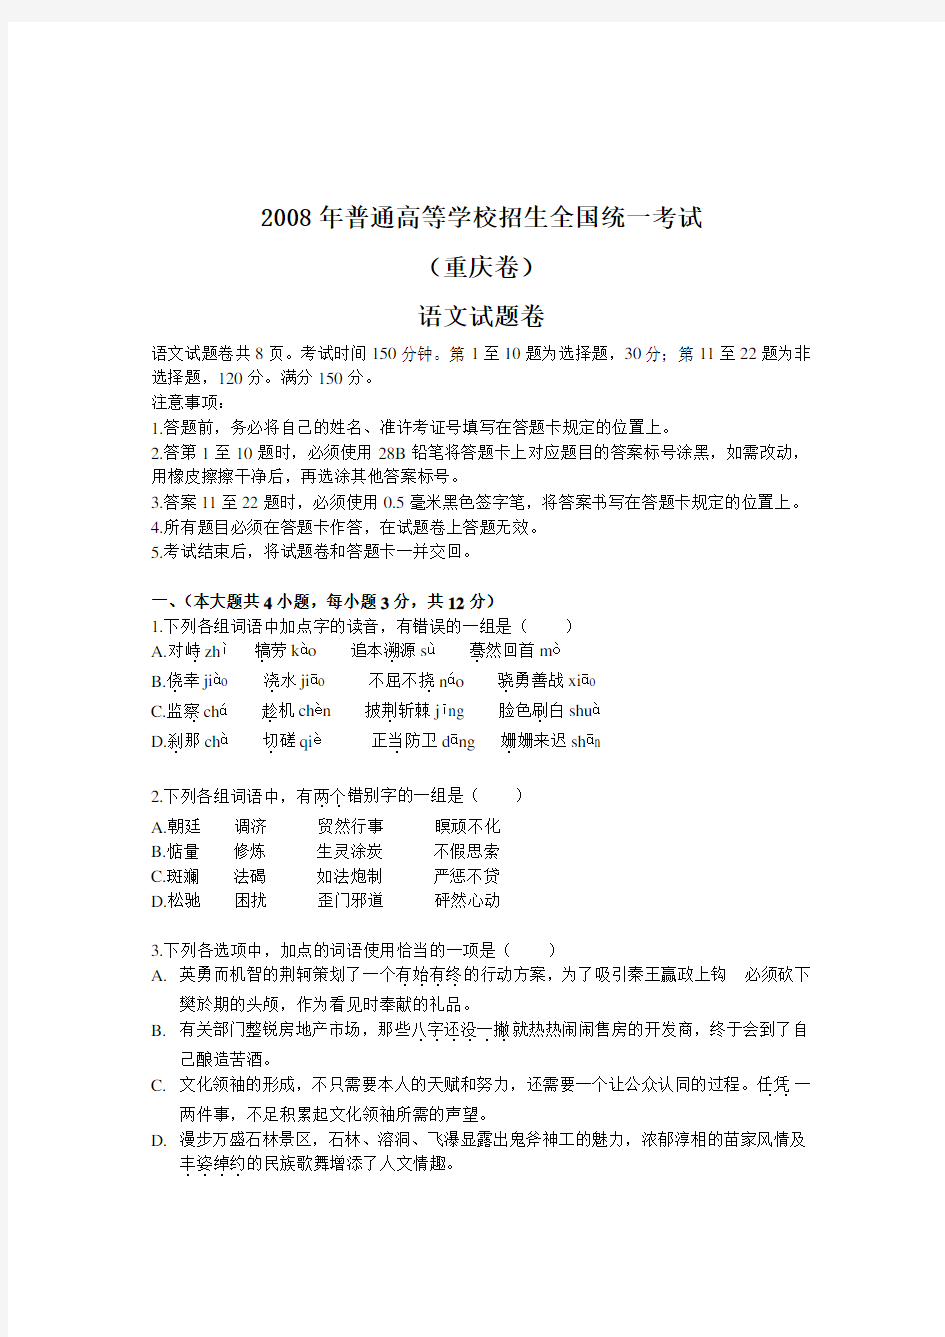 重庆市语文高考试卷及答案